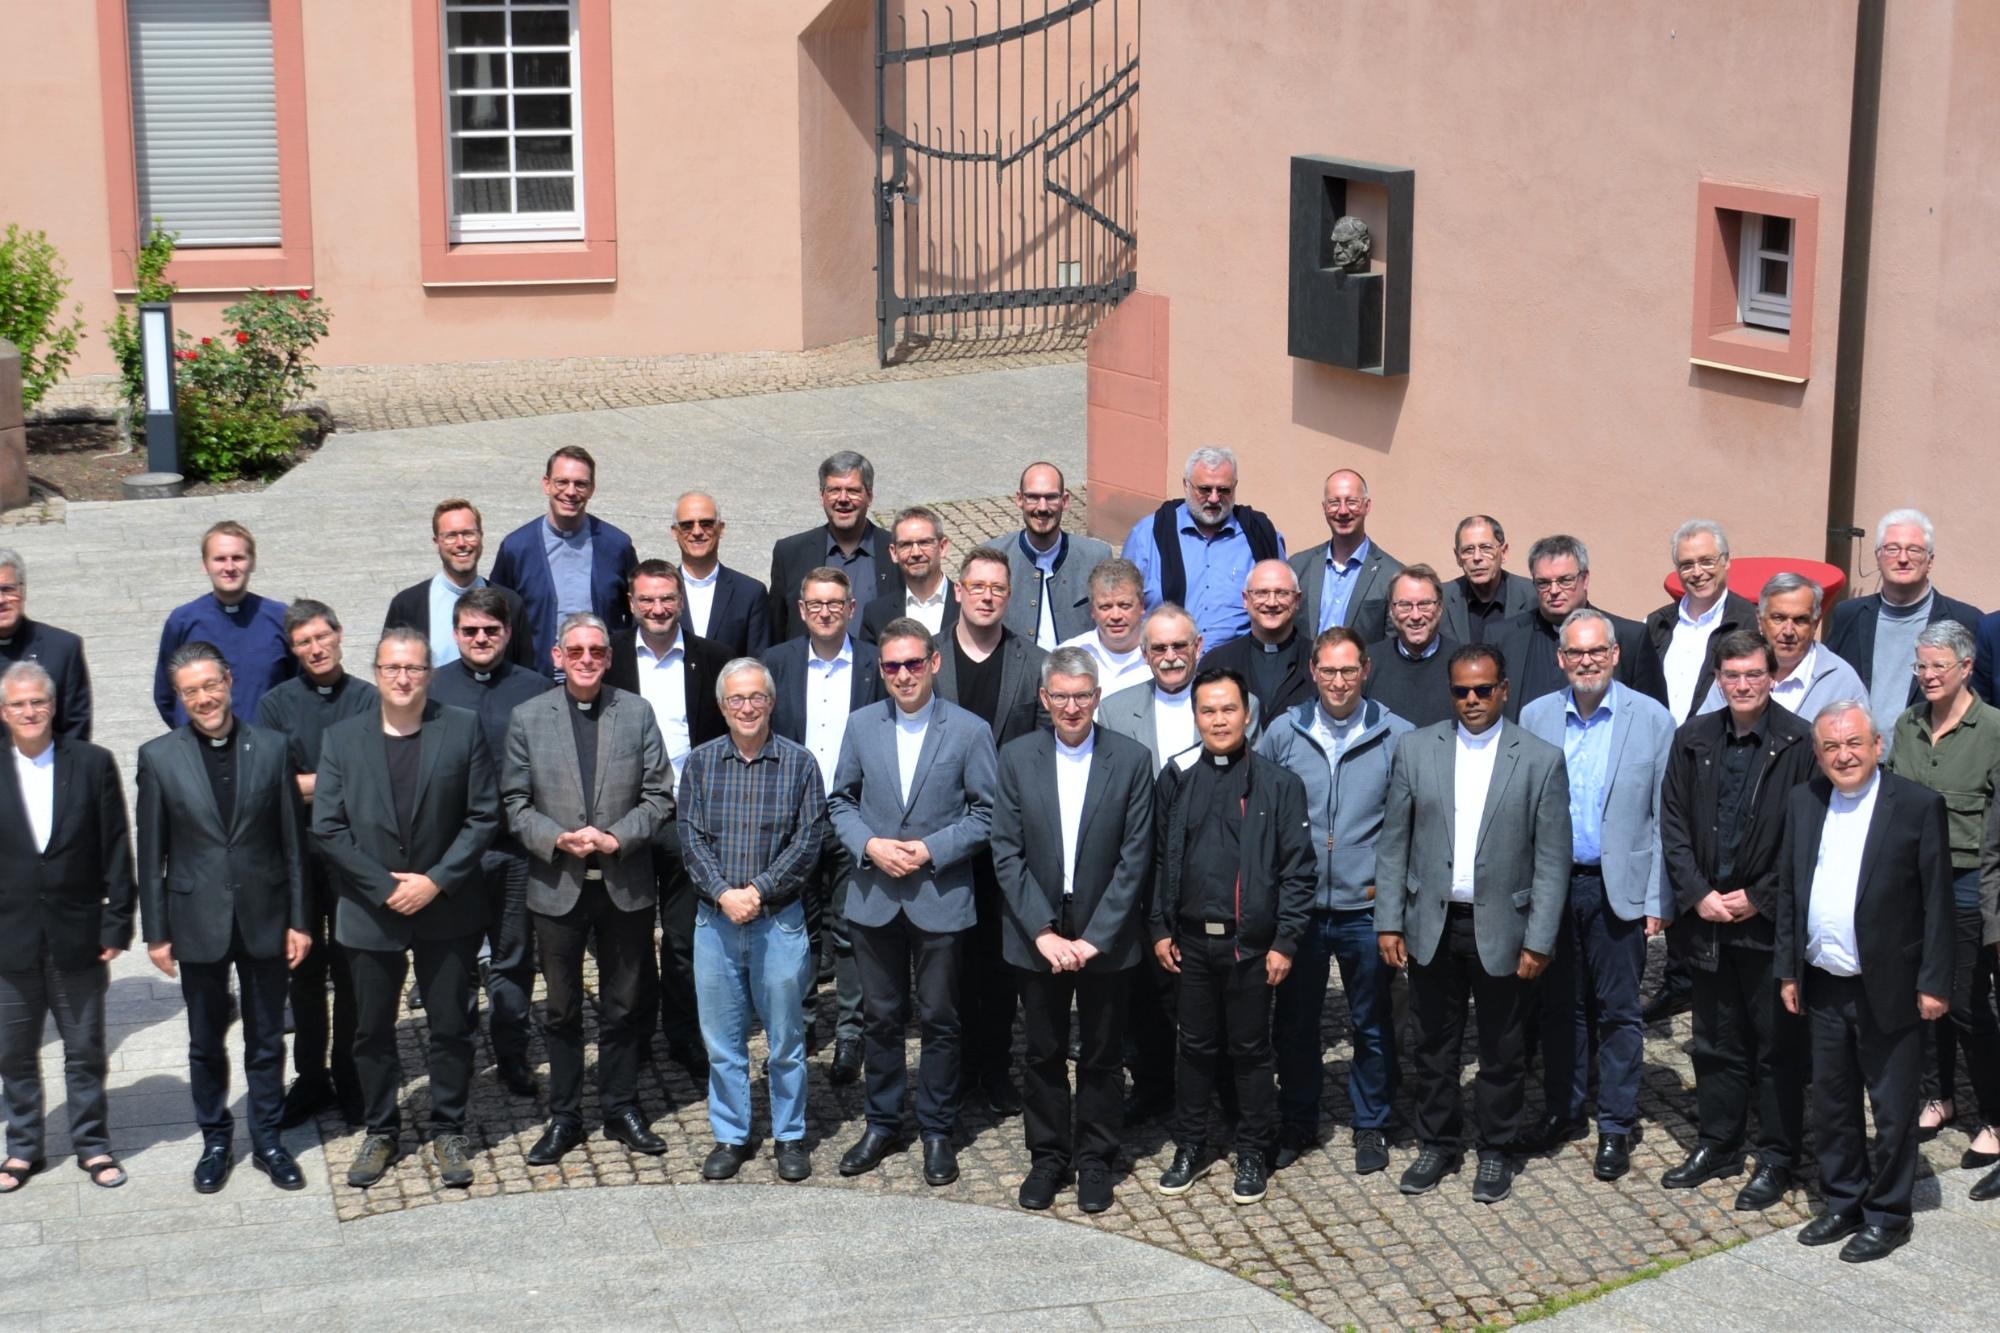 Mainz, 1. Juni 2022: Erstmals tagte die Konferenz der Leitenden Pfarrer im Erbacher Hof in Mainz.